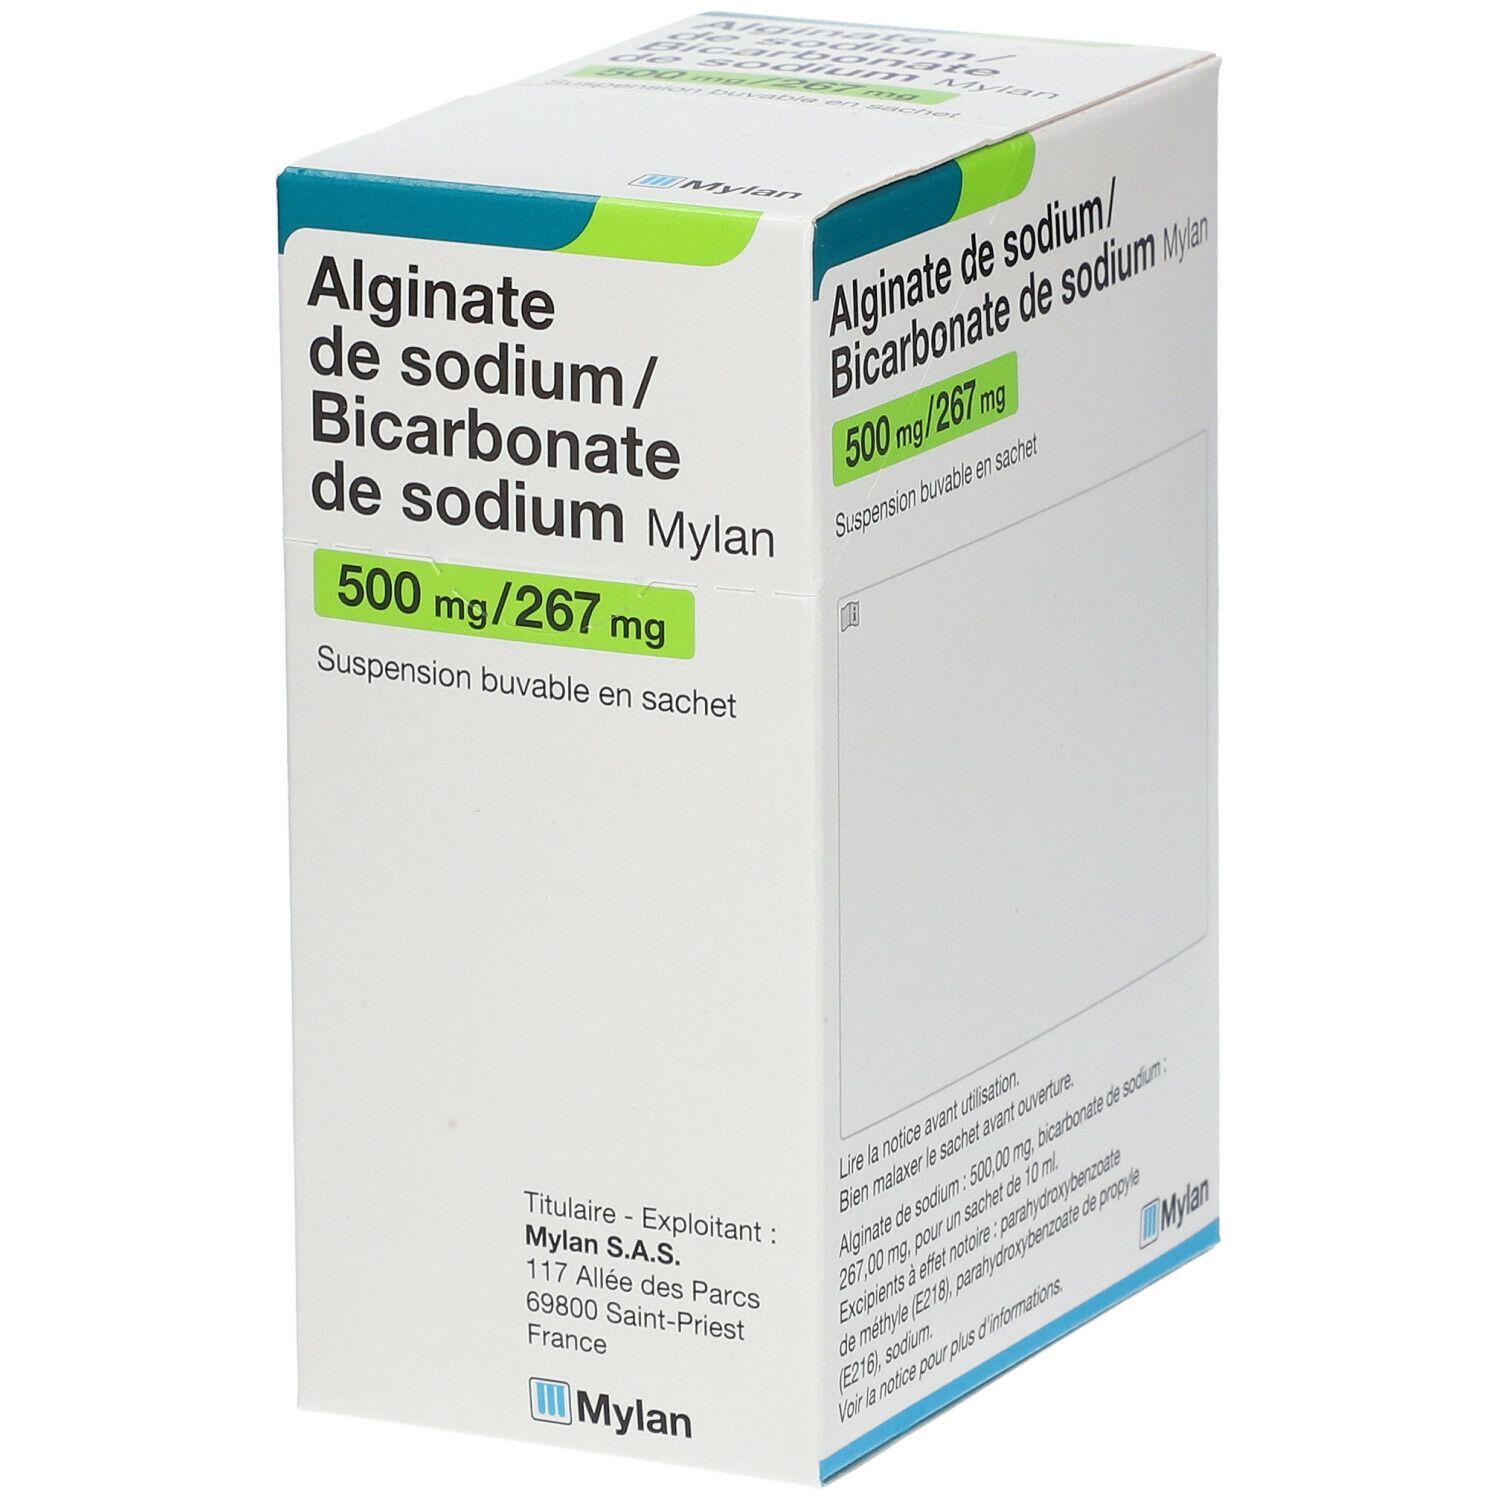 Alginate de sodium - Ingredíssimo